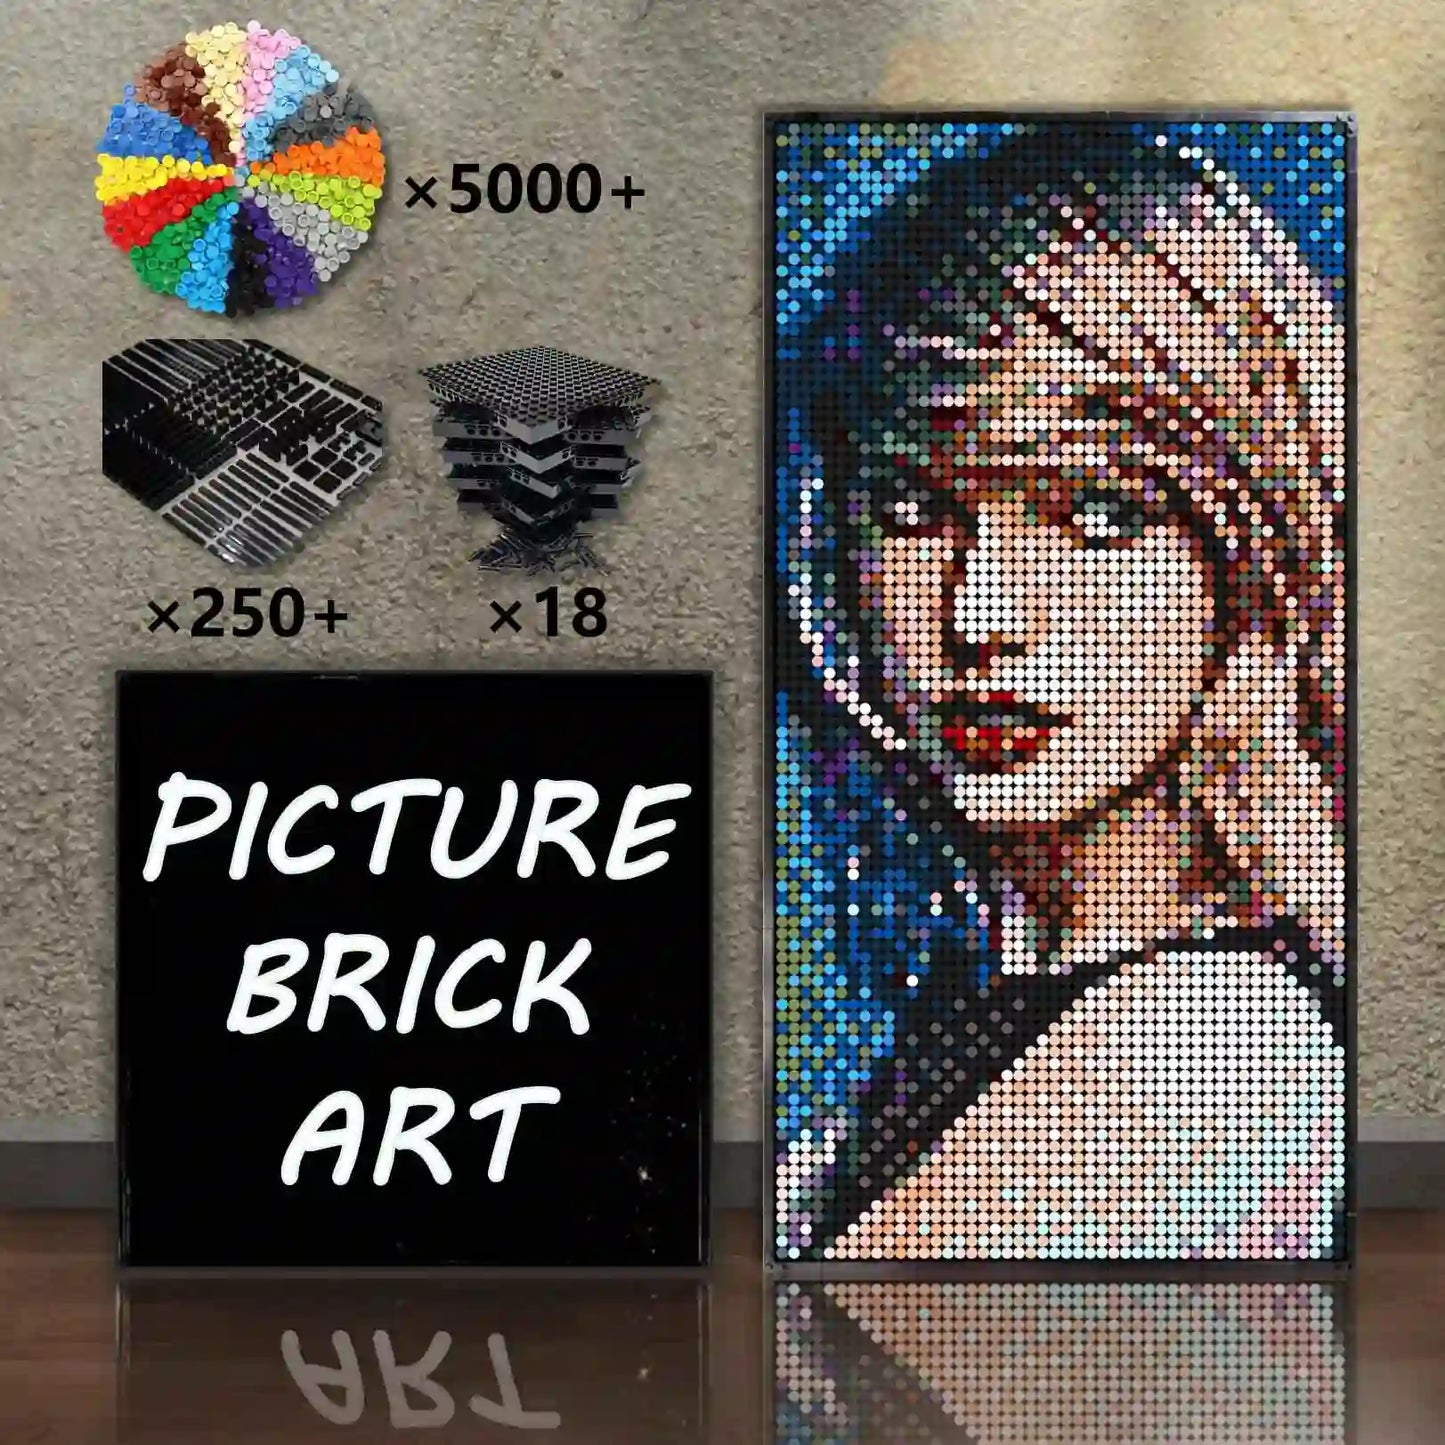  Analyzing image    LEGO-Mosaic-Wall-Art-Taylor-Swift_15_-Pixel-Art-48x96